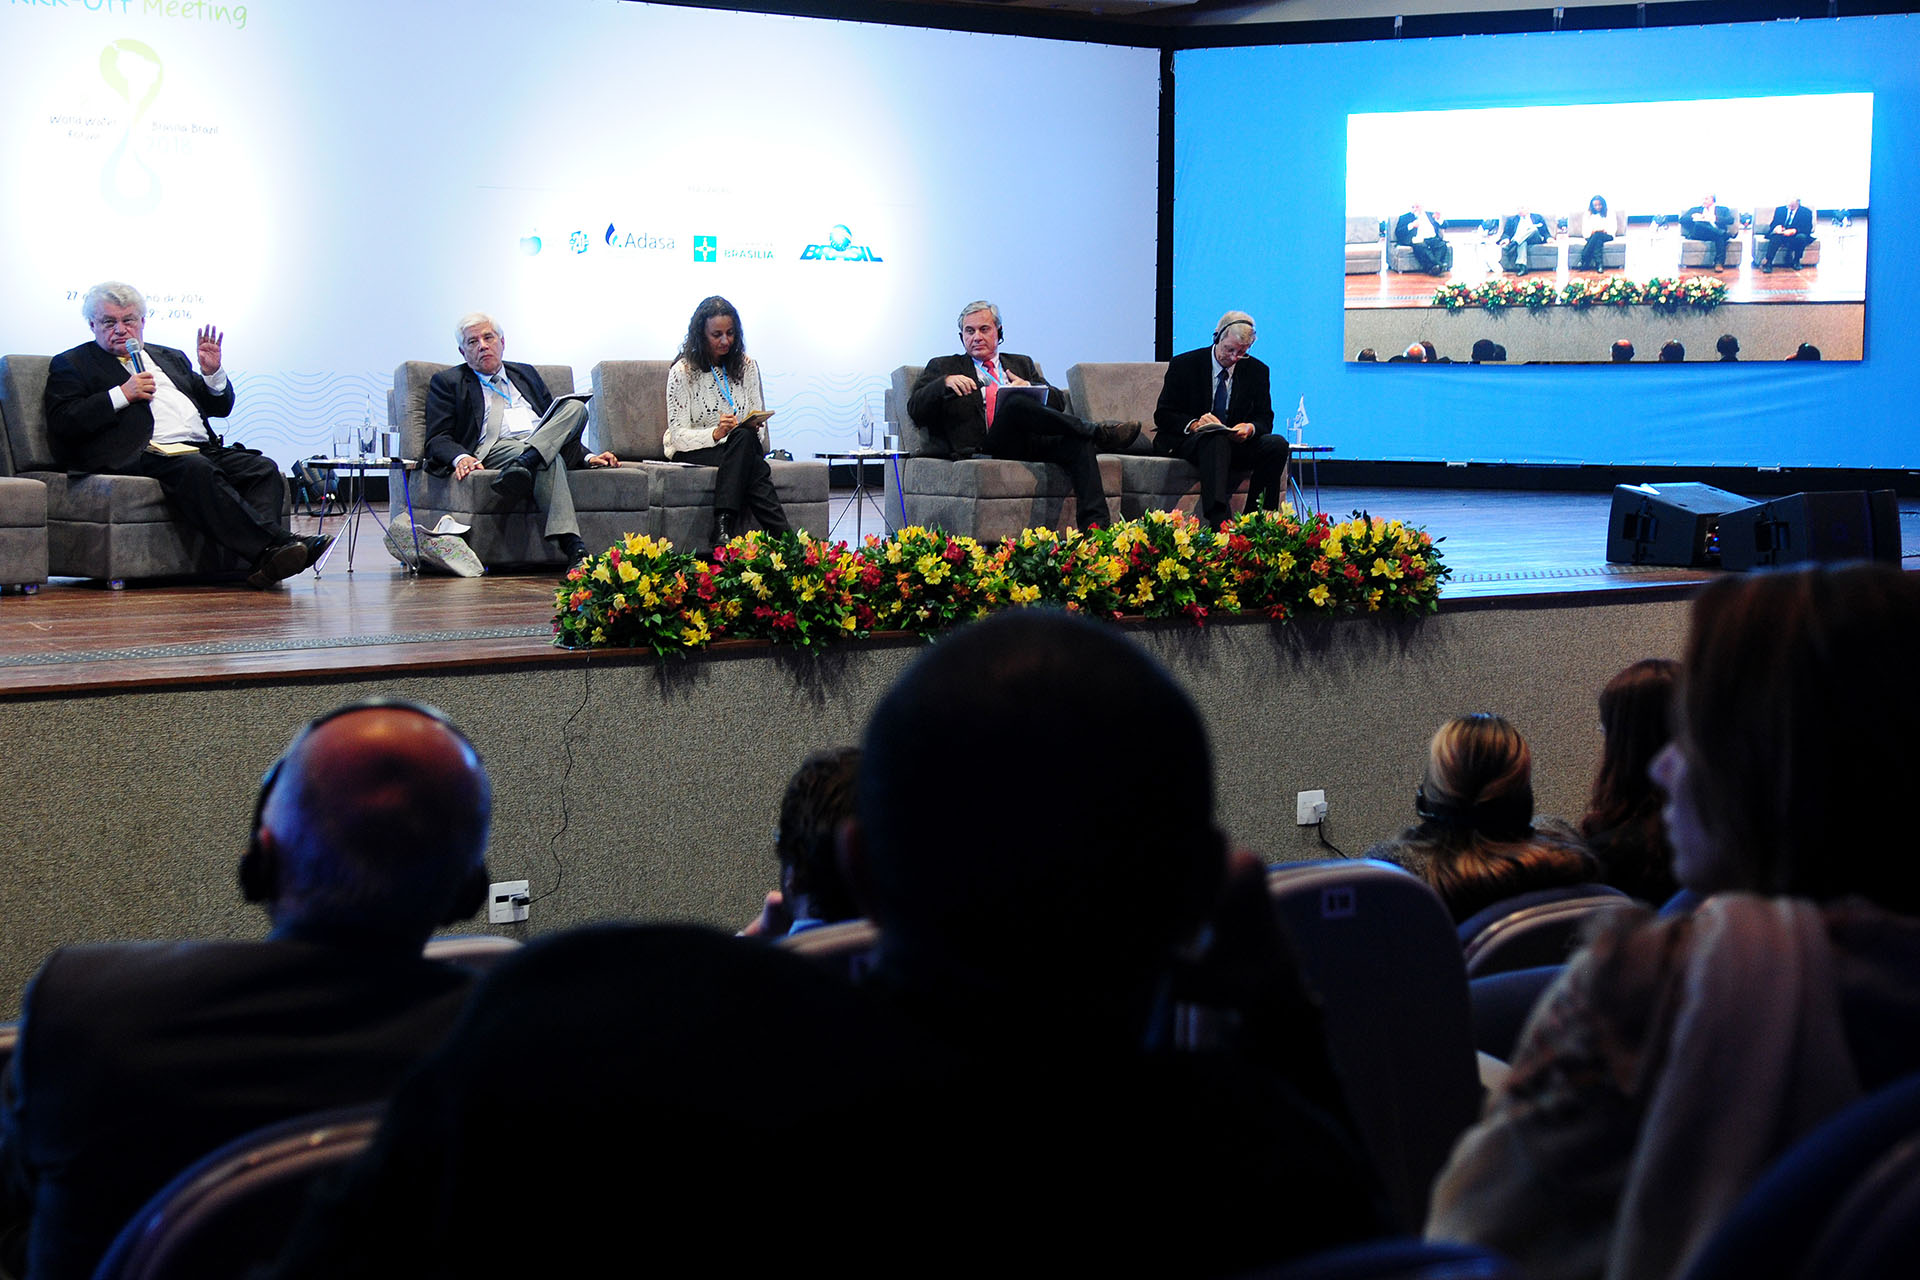 Nesta terça-feira (28), foi encerrado o Kick-off Meeting 8º Fórum Mundial da Água que ocorrerá em Brasília de 18 a 23 de março de 2018.